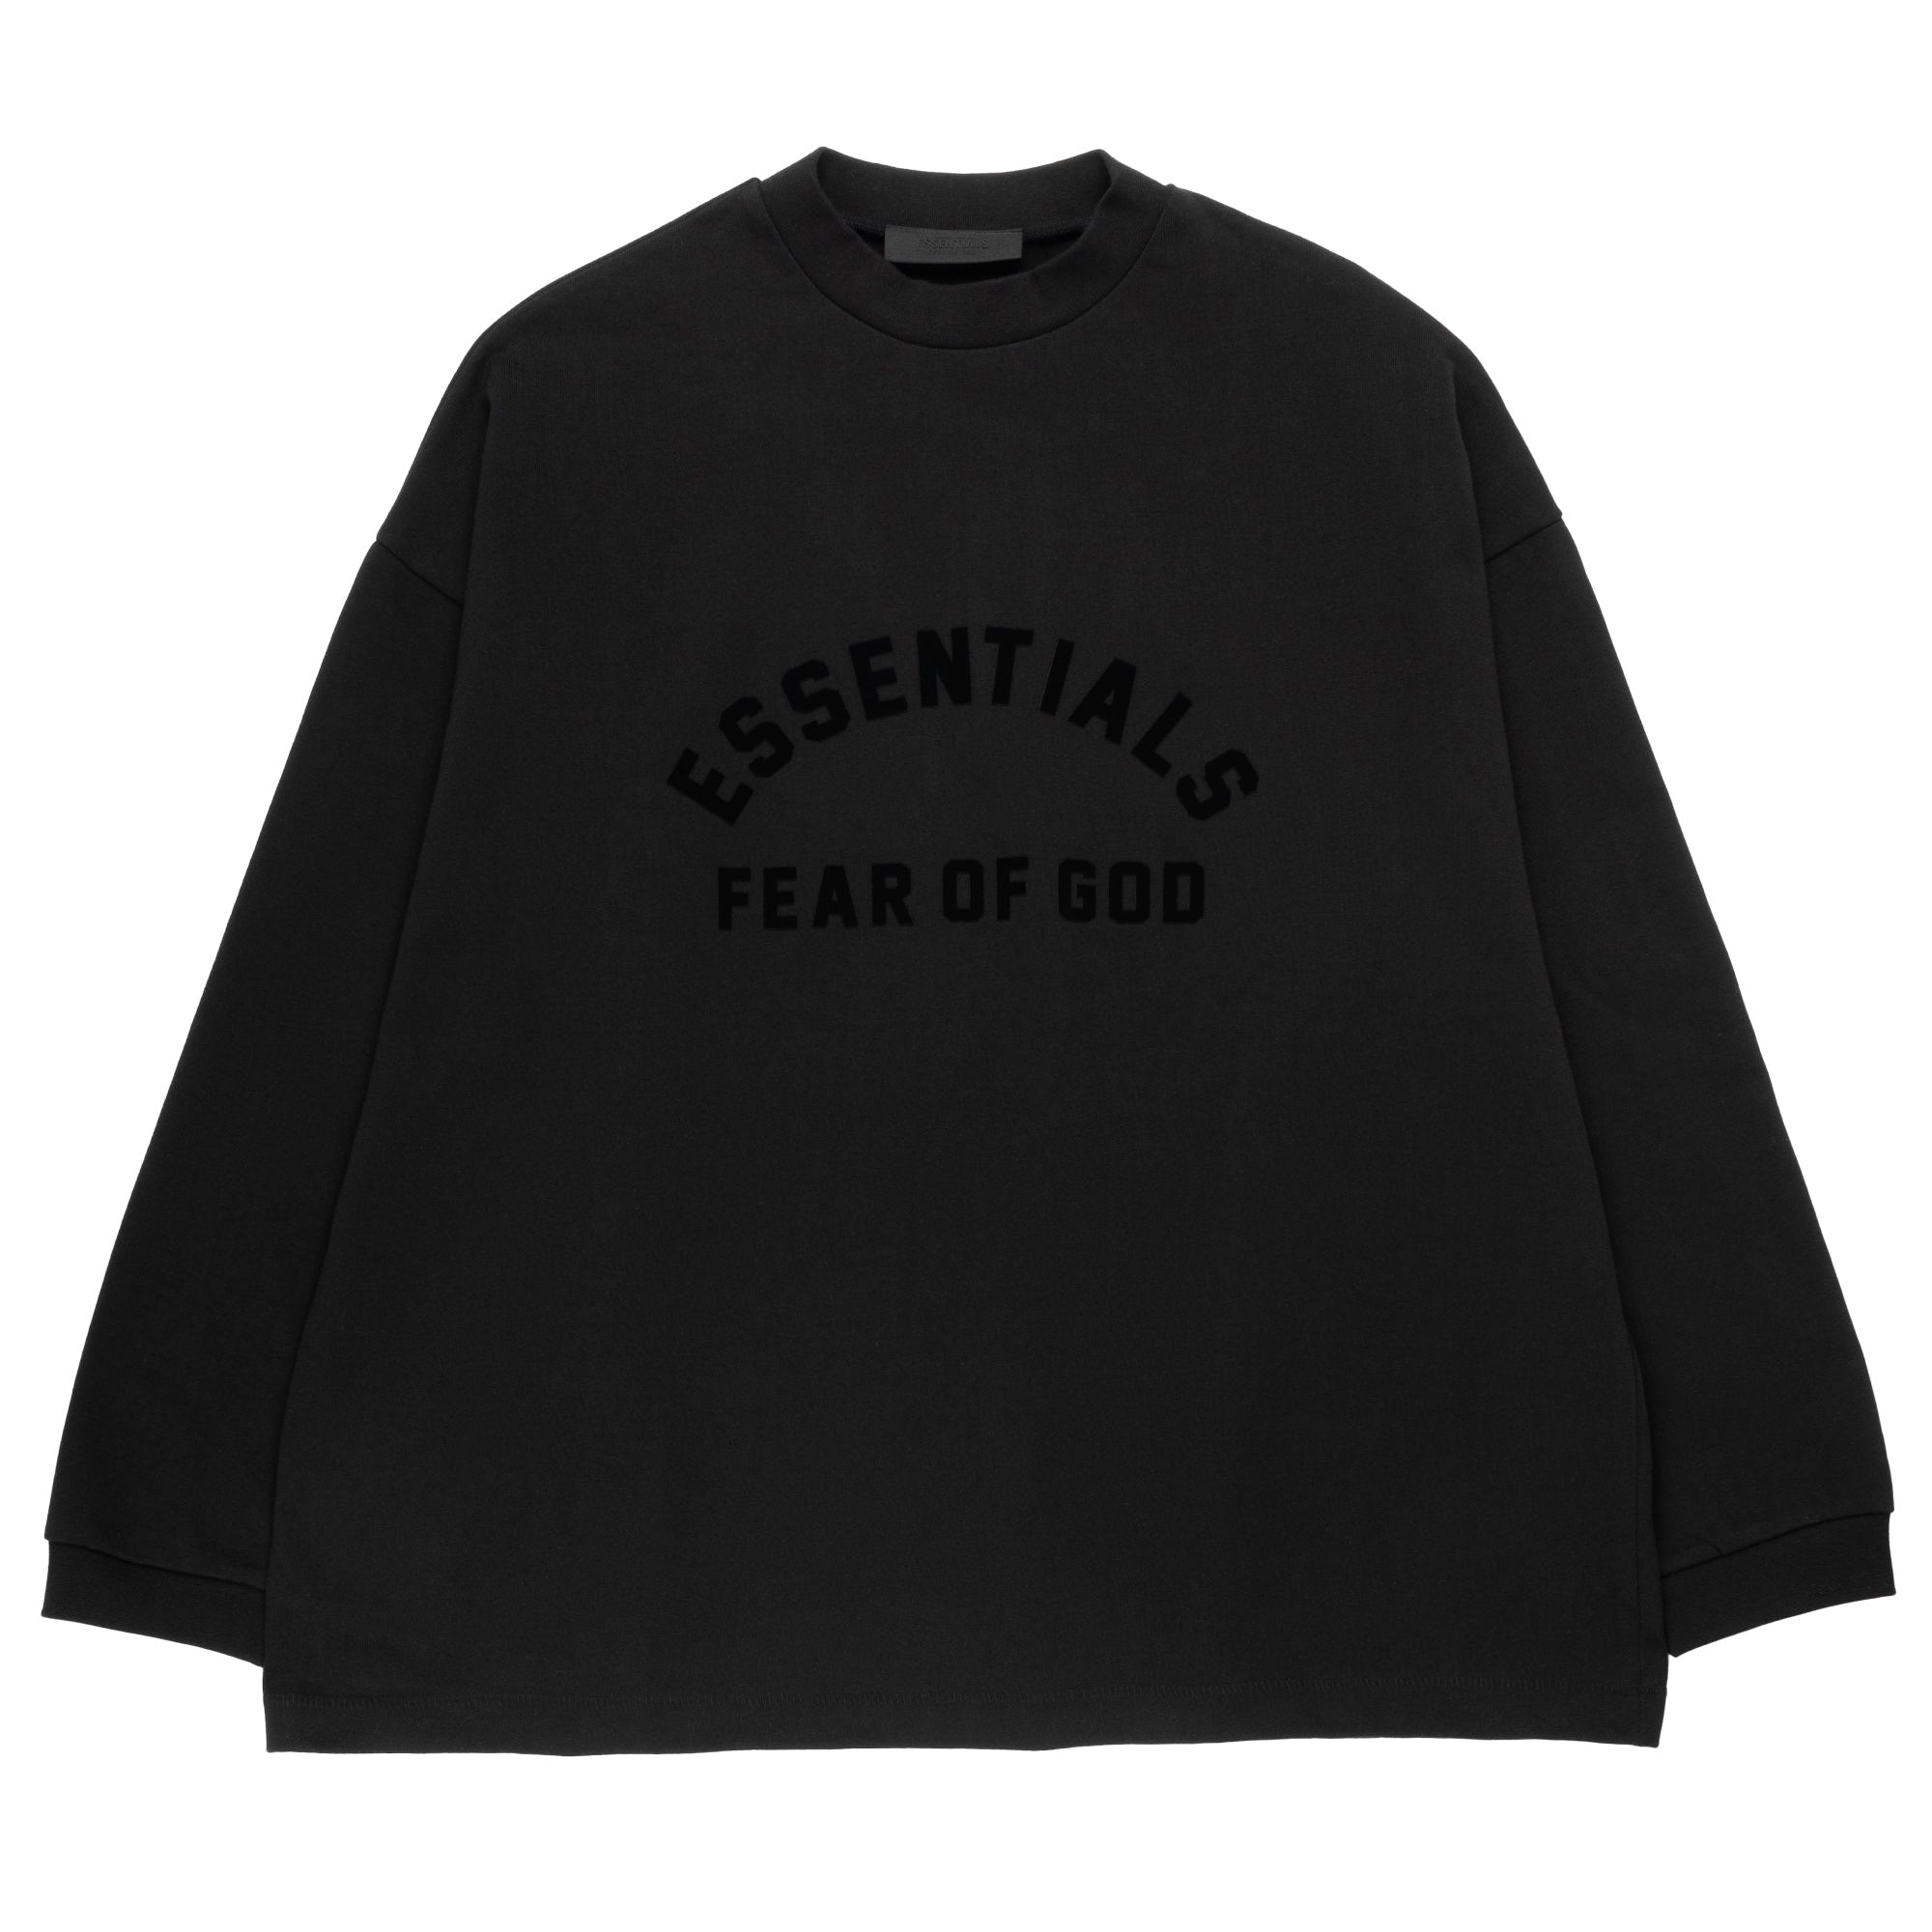 Fear of God Essentials T Shirt Light Grey Heather Grey – The Luxury Shopper